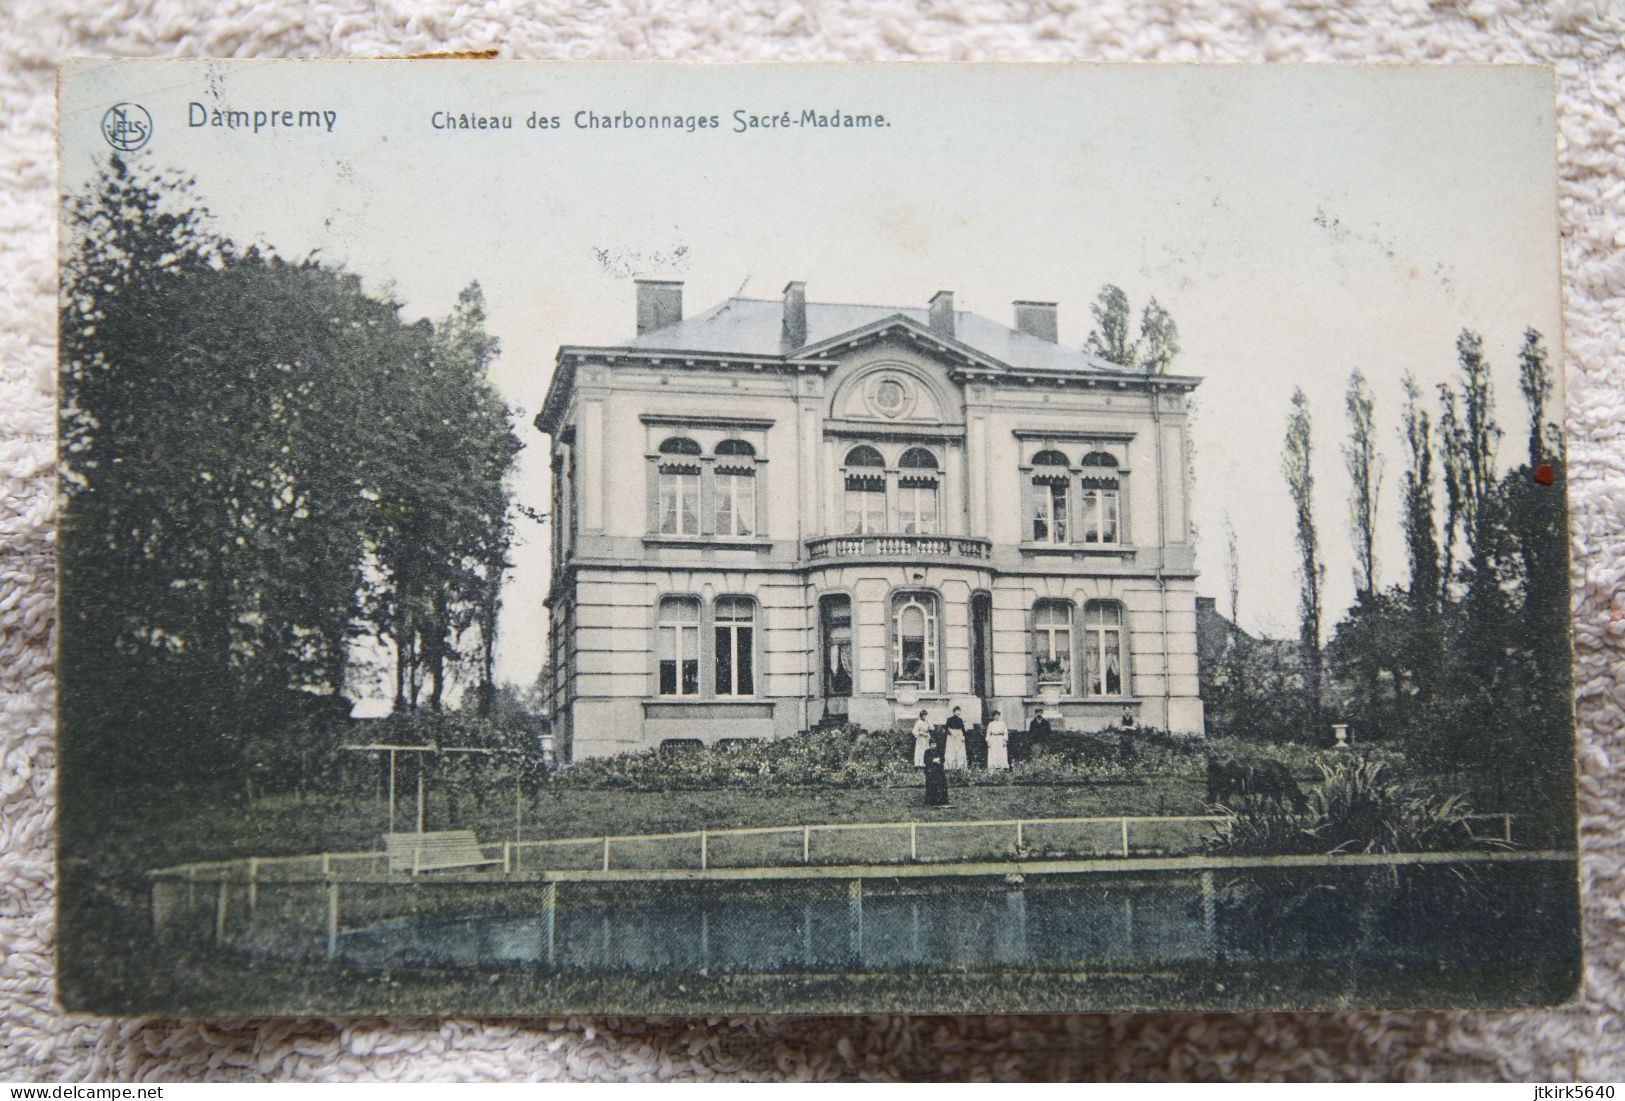 Dampremy "Château Des Charbonnages Sacré-Madame" - Charleroi